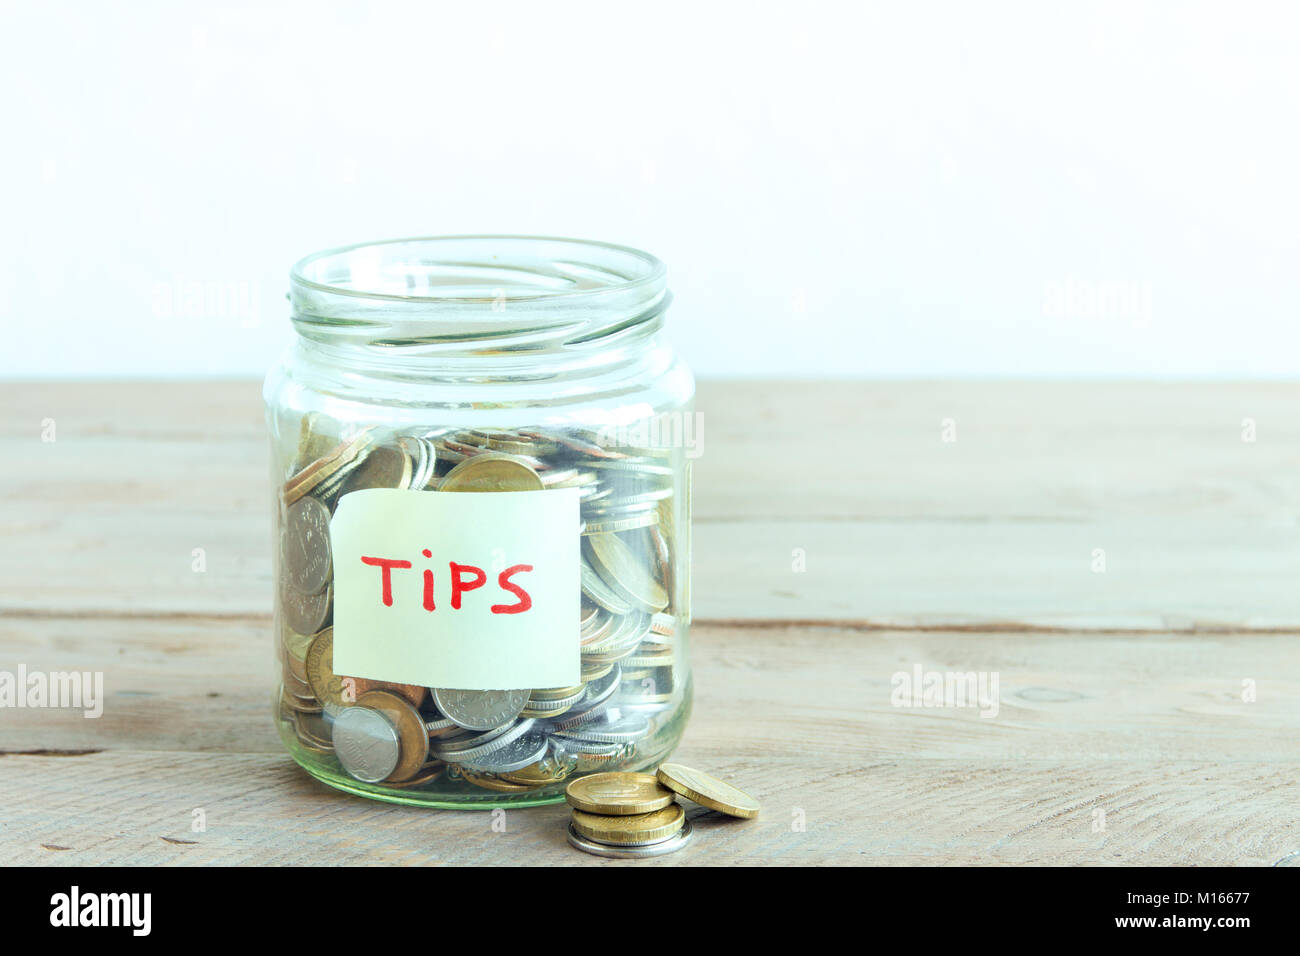 Münzen in Glas Glas mit Tipps label. Geld sparen, Tipps und Spendenkonzept, kopieren. Stockfoto